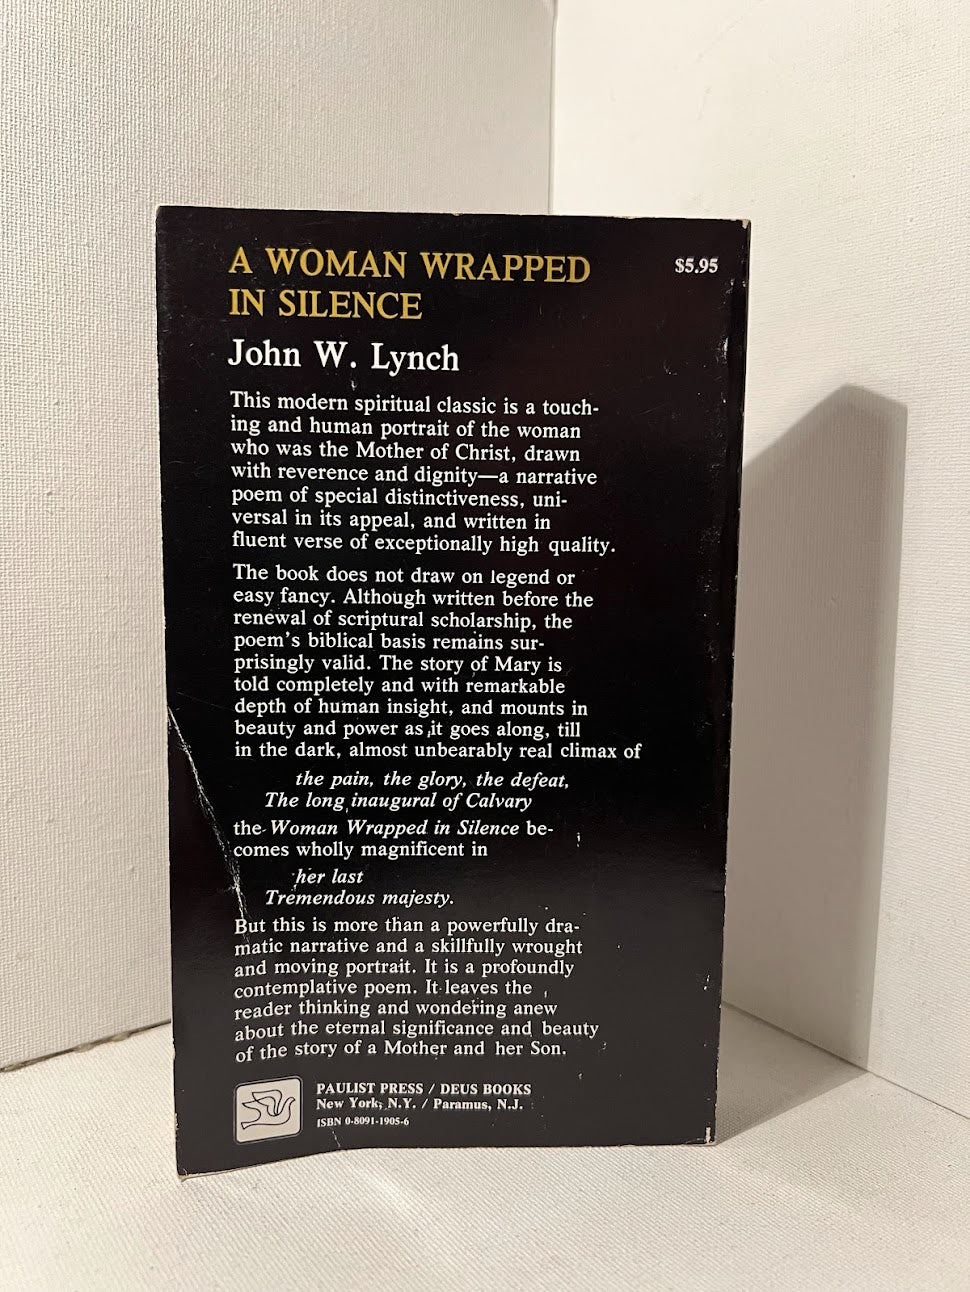 Woman Wrapped in Silence by John W. Lynch